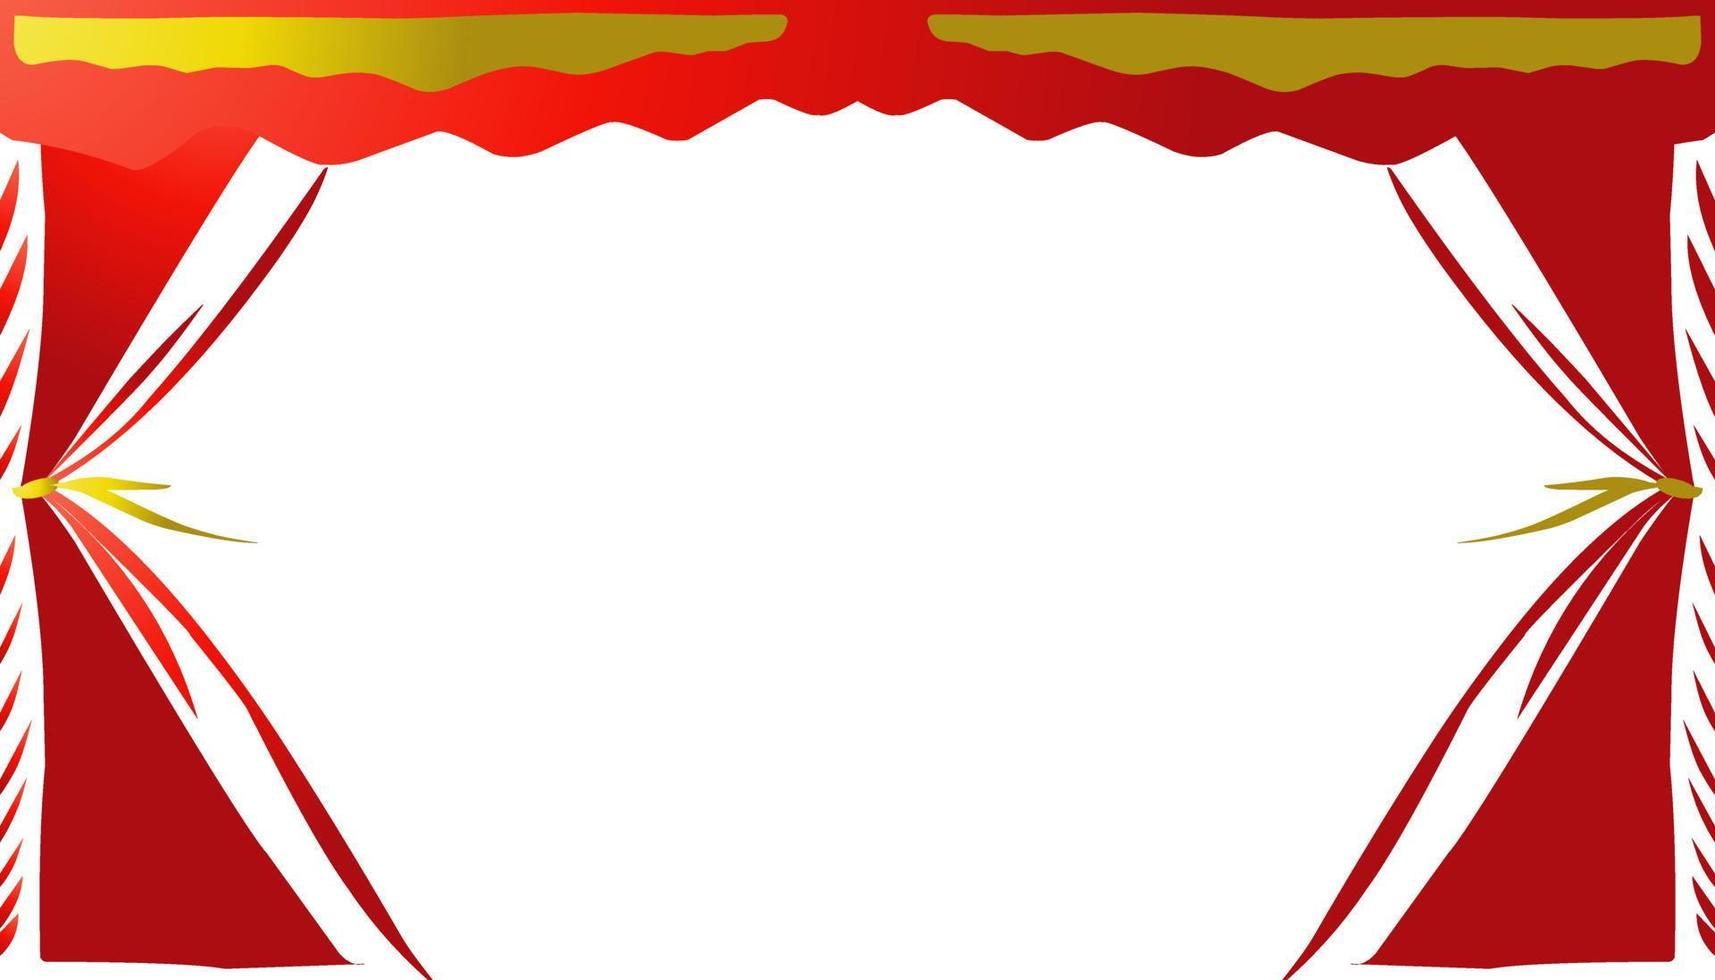 Das Hintergrunddesign mit einem ästhetischen roten Vorhang oder Vorhangmuster eignet sich für Einladungsdesigns, Grußkarten usw vektor